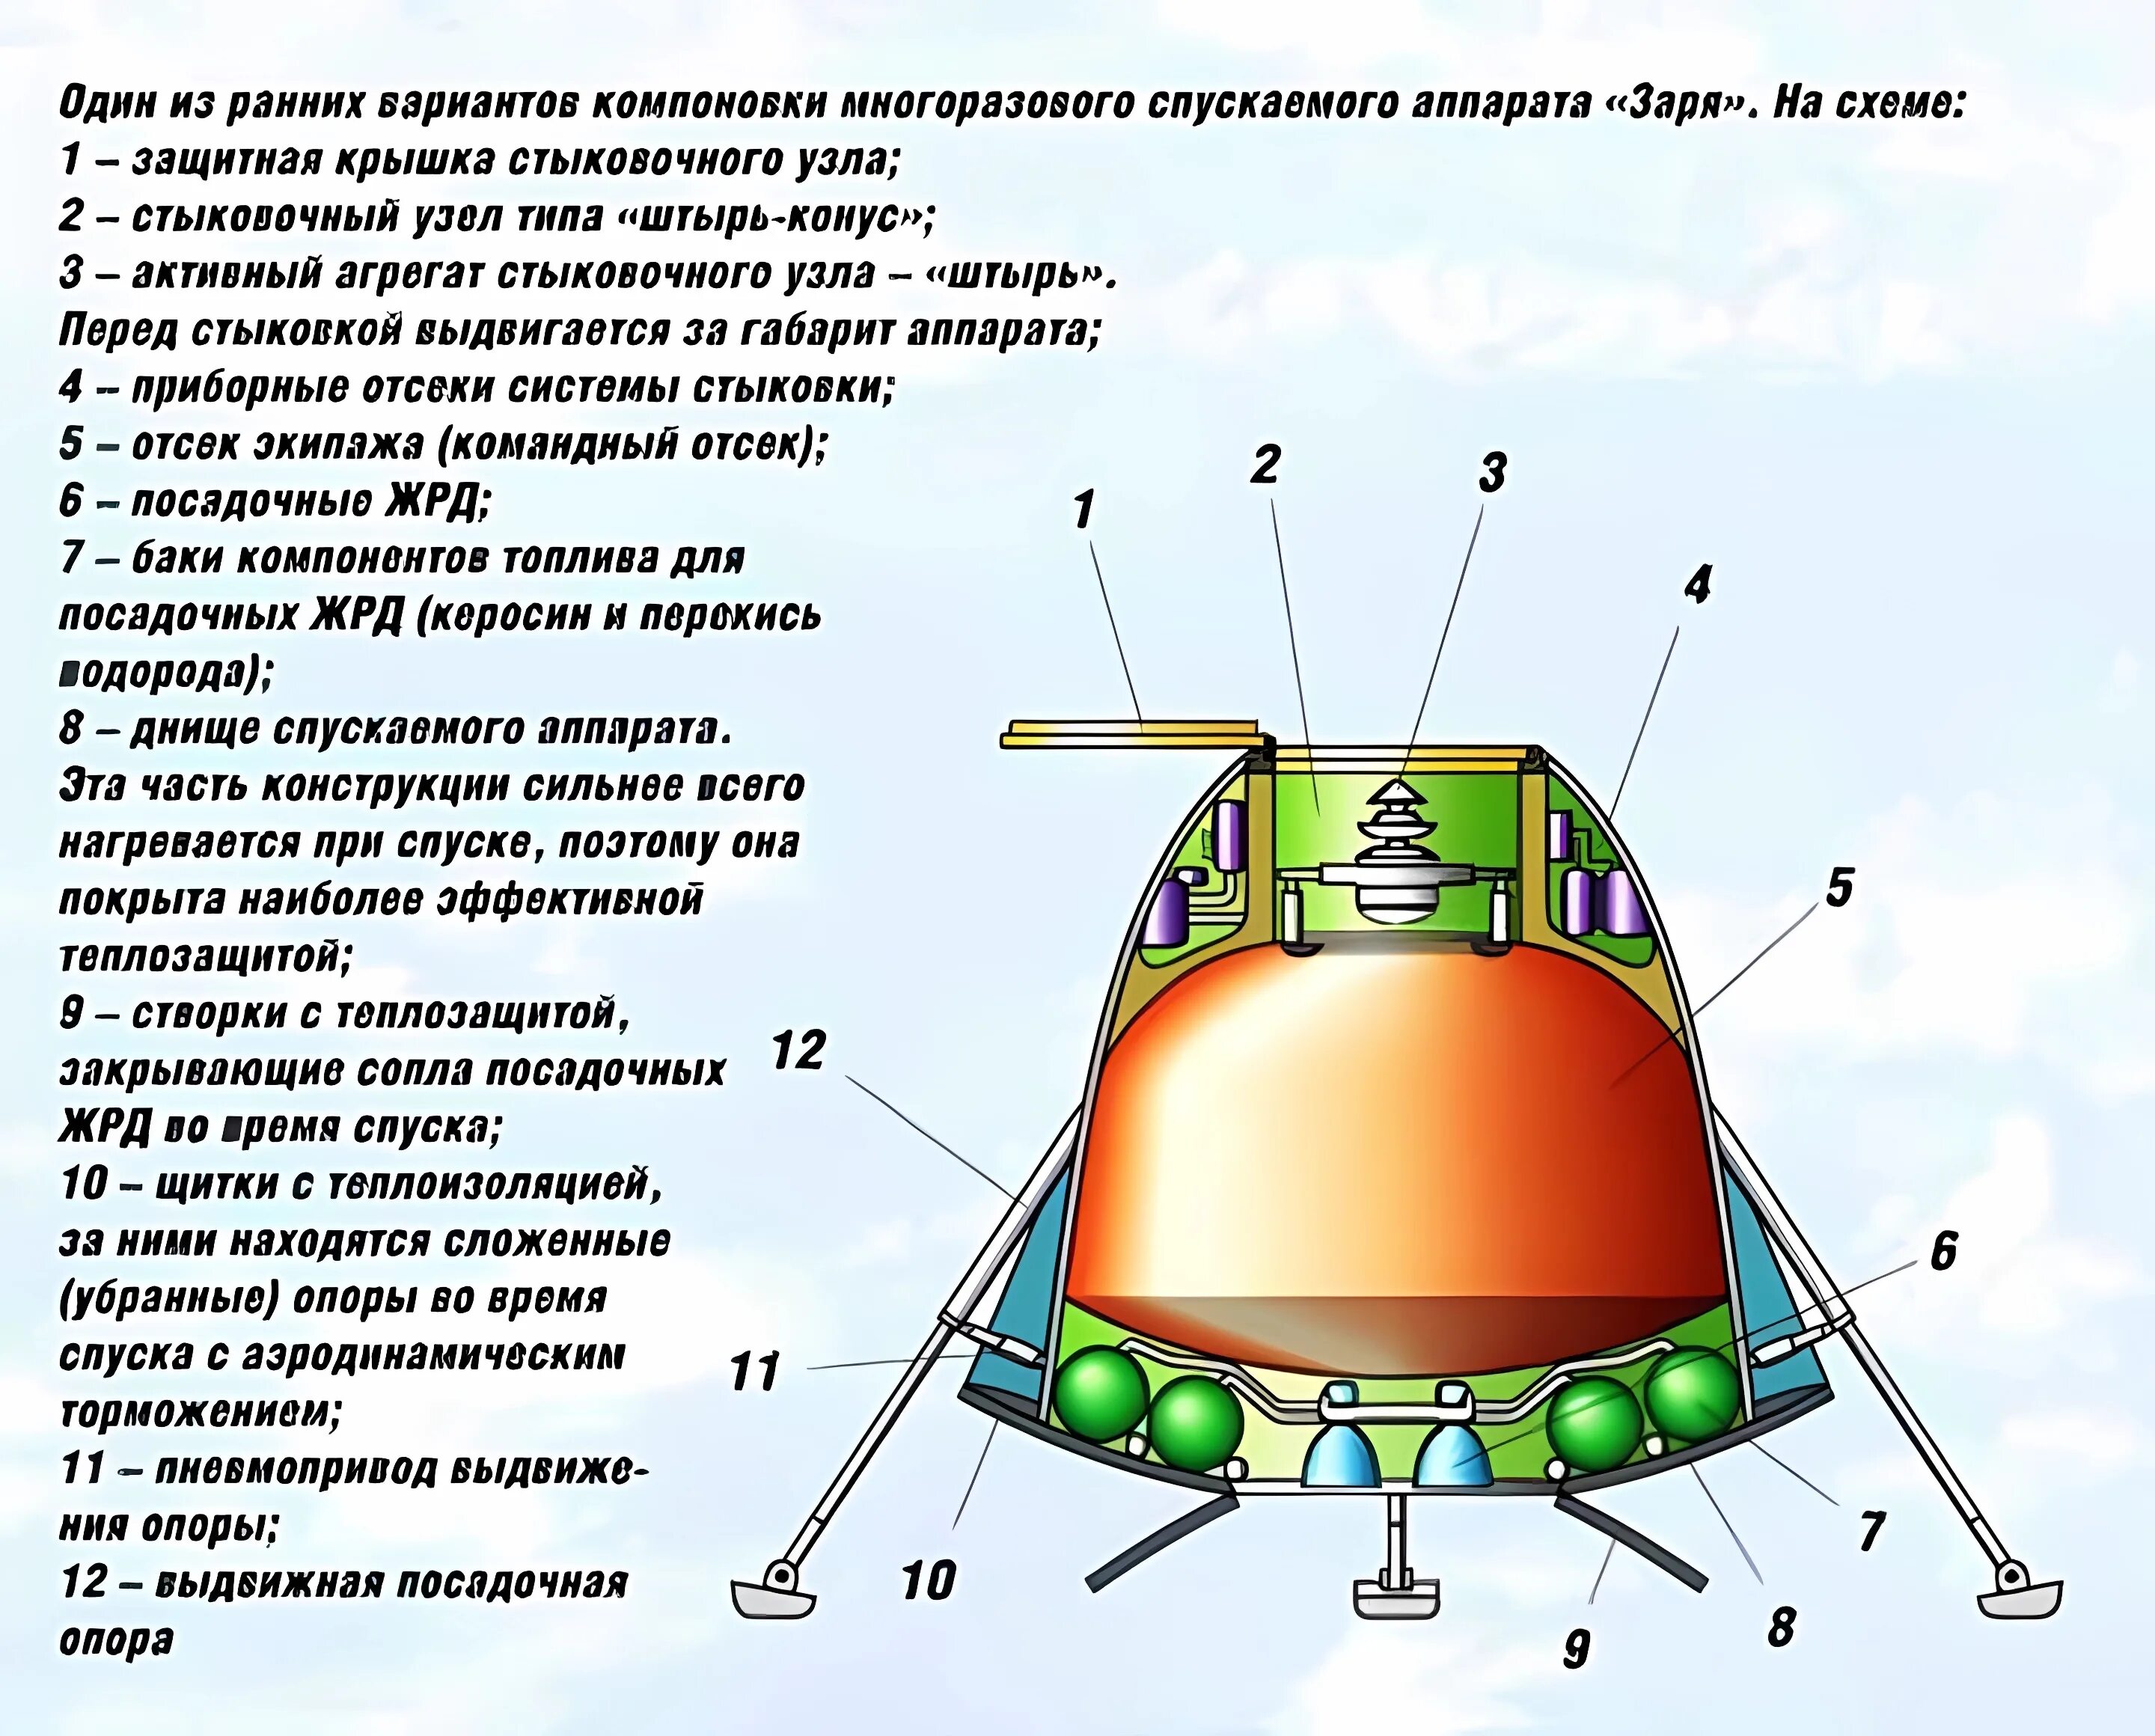 Многоразовый космический корабль Заря. Спускаемый аппарат Союз чертеж. Чертеж спускаемого аппарата Союз. Многоразовый пилотируемый космический корабль 14ф70 Заря.